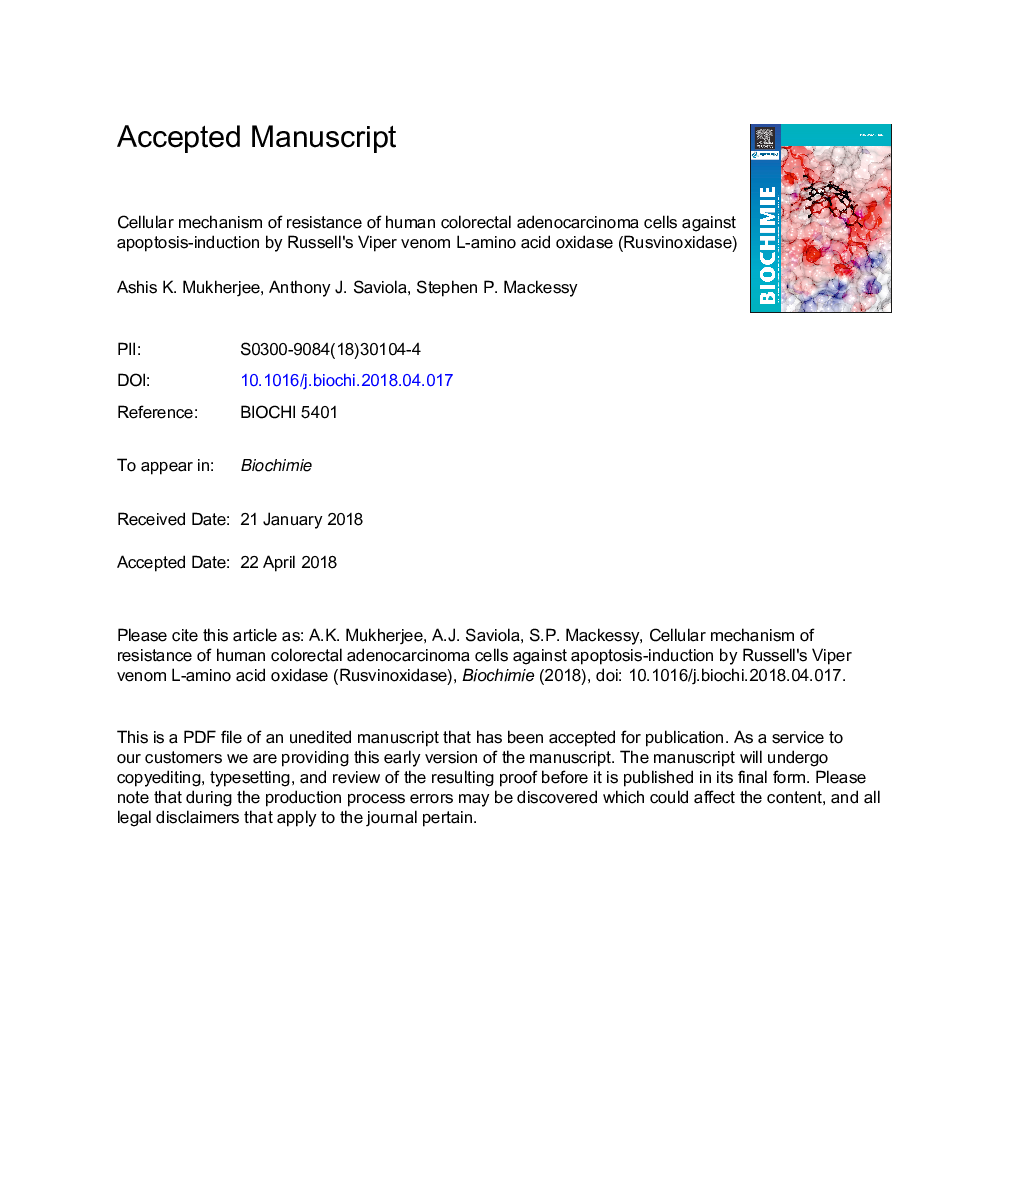 مکانیسم سلولی مقاومت سلول های آدنوکارسینوم کولورکتال انسانی در برابر آپوپتوزیس القا شده توسط اسیدهاز اسید آمینه اسید گرسنه راسل (روسوین اگزیداز) 